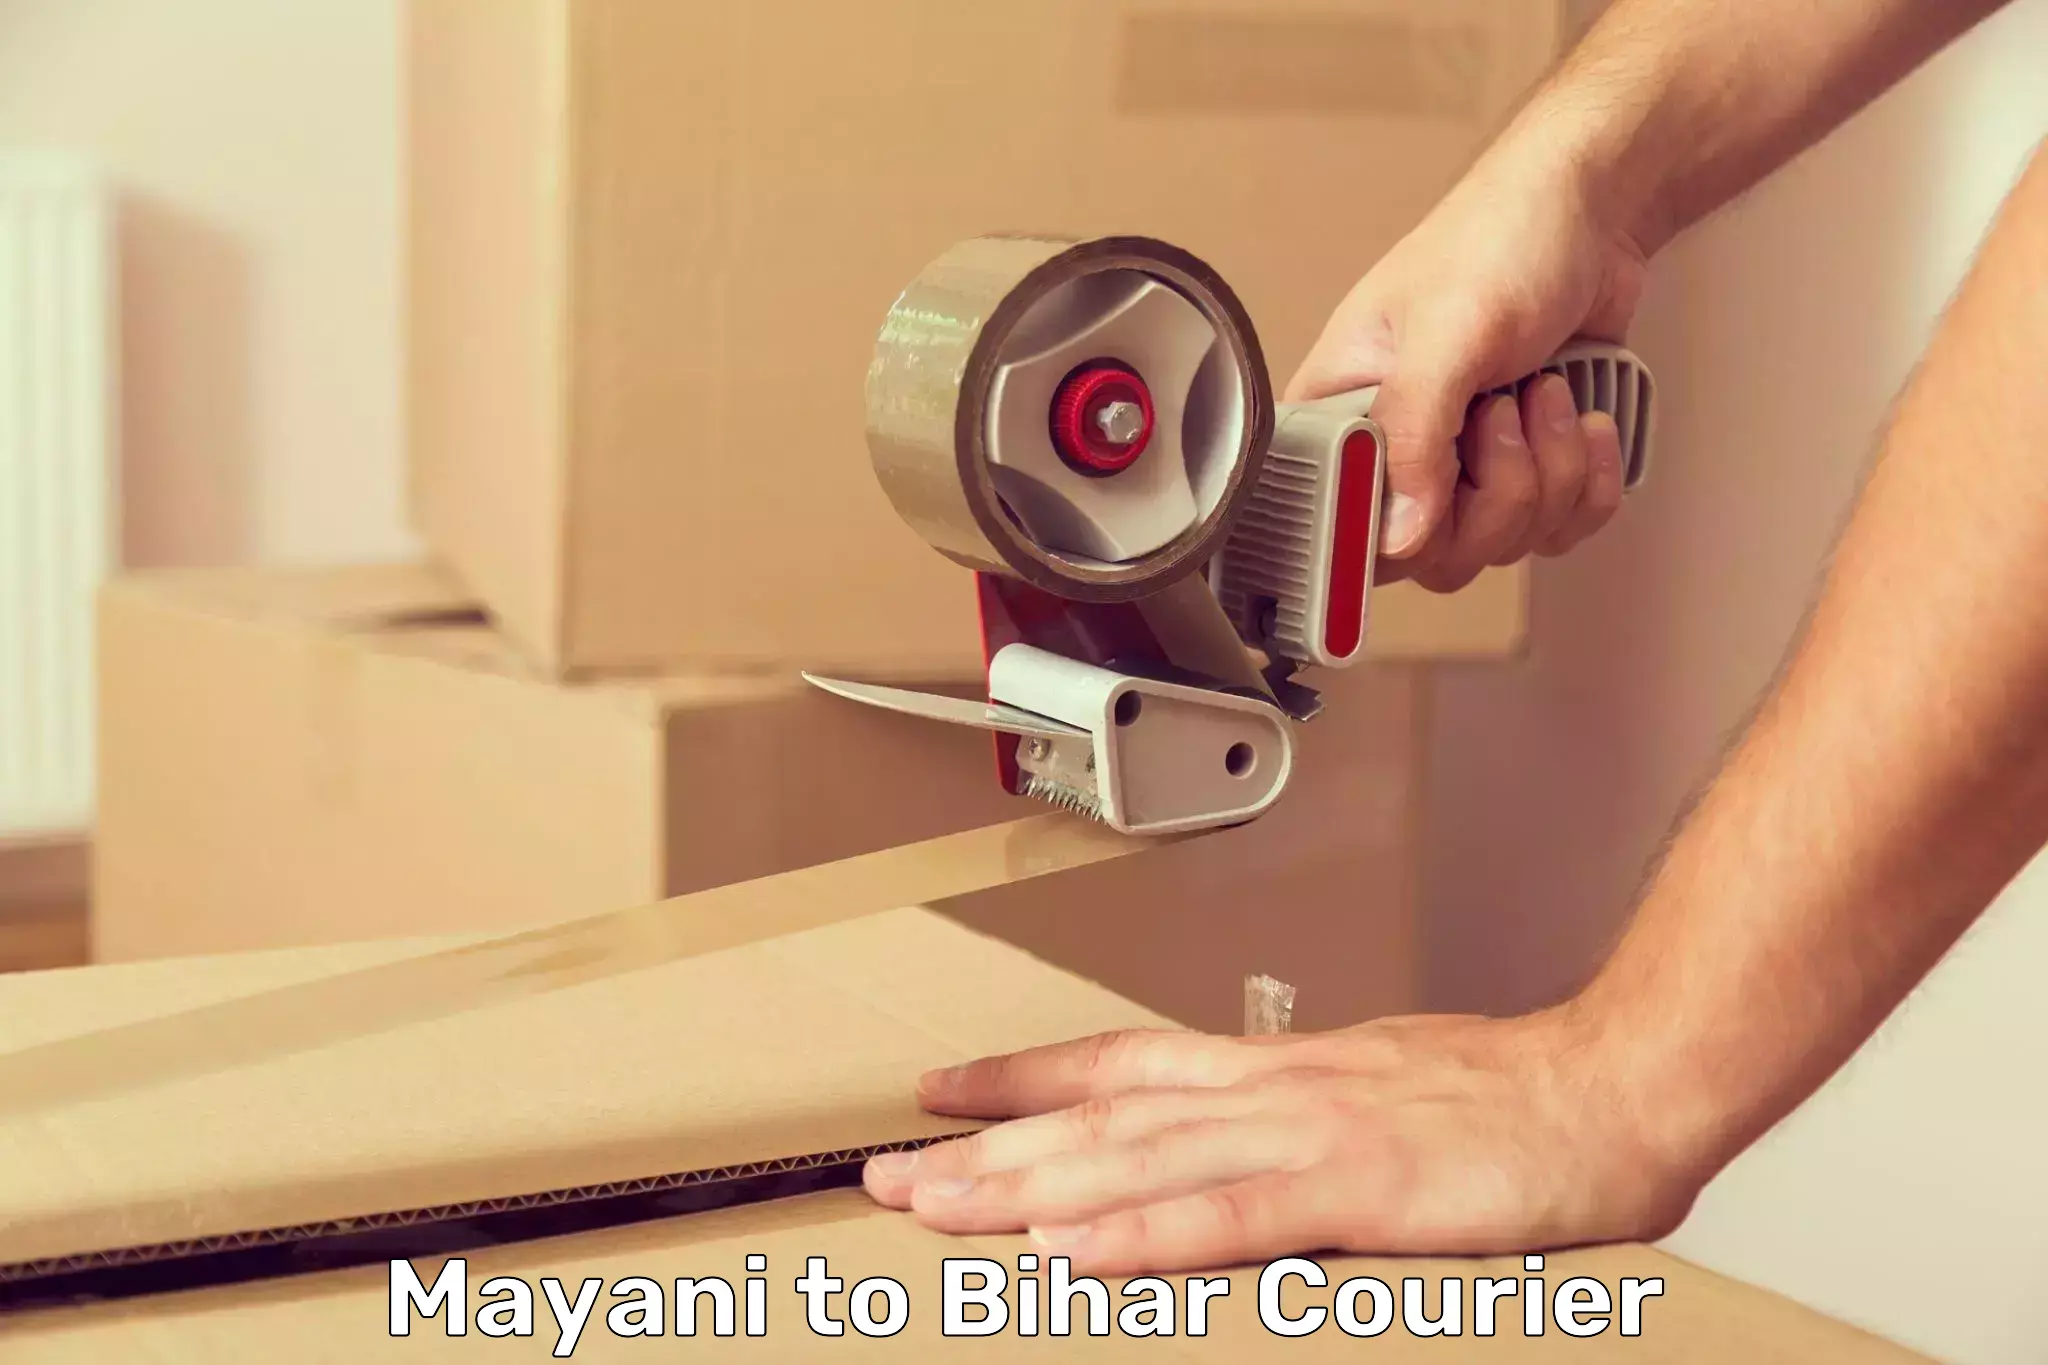 Courier service comparison Mayani to Runni Saidpur